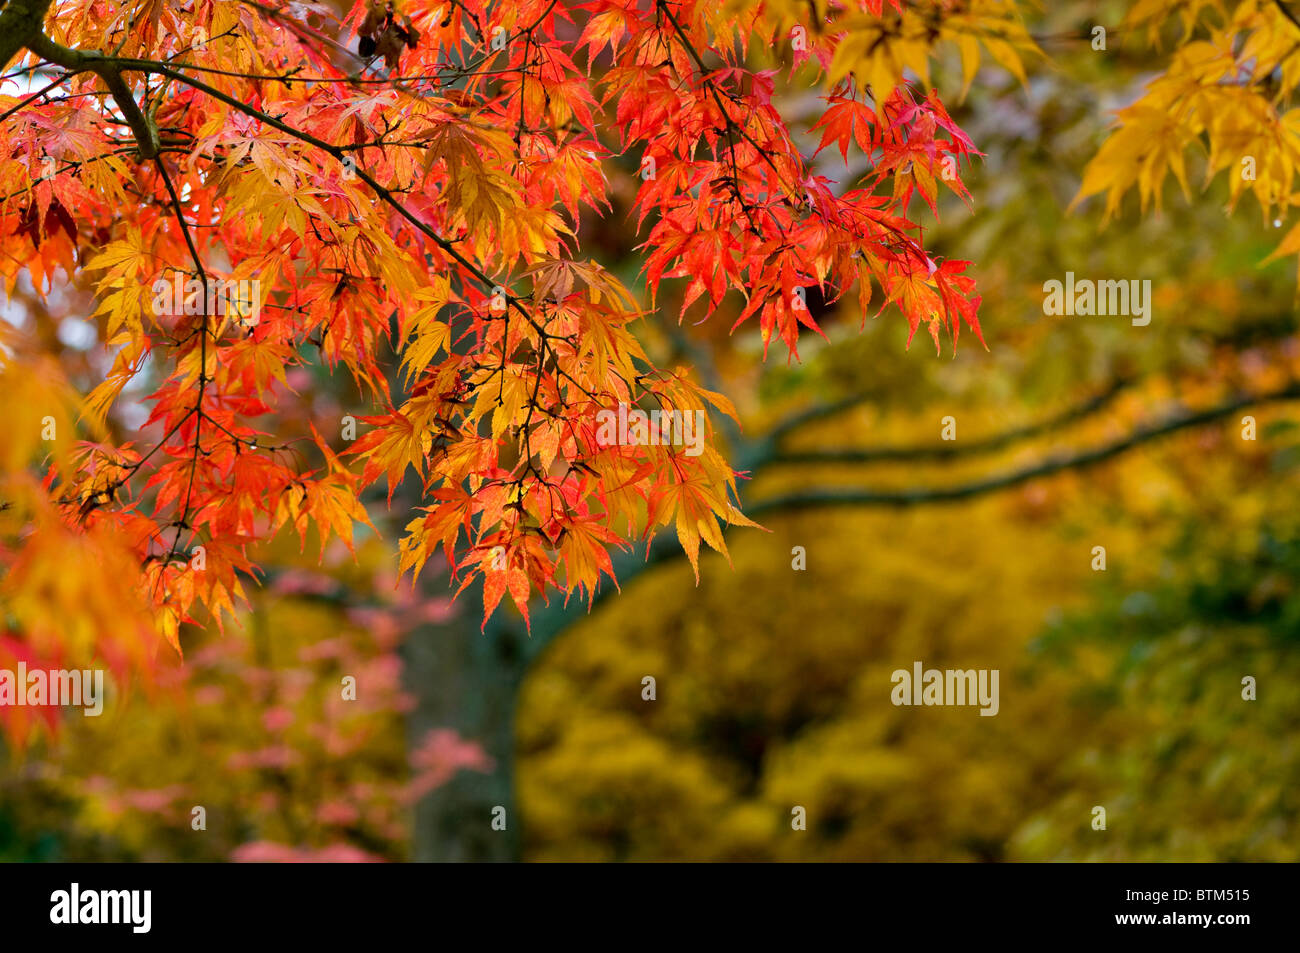 Imagen cercana de la vibrante otoño/caída de color deja de Acer Palmatum el arce japonés, imagen tomada contra un fondo blando. Foto de stock